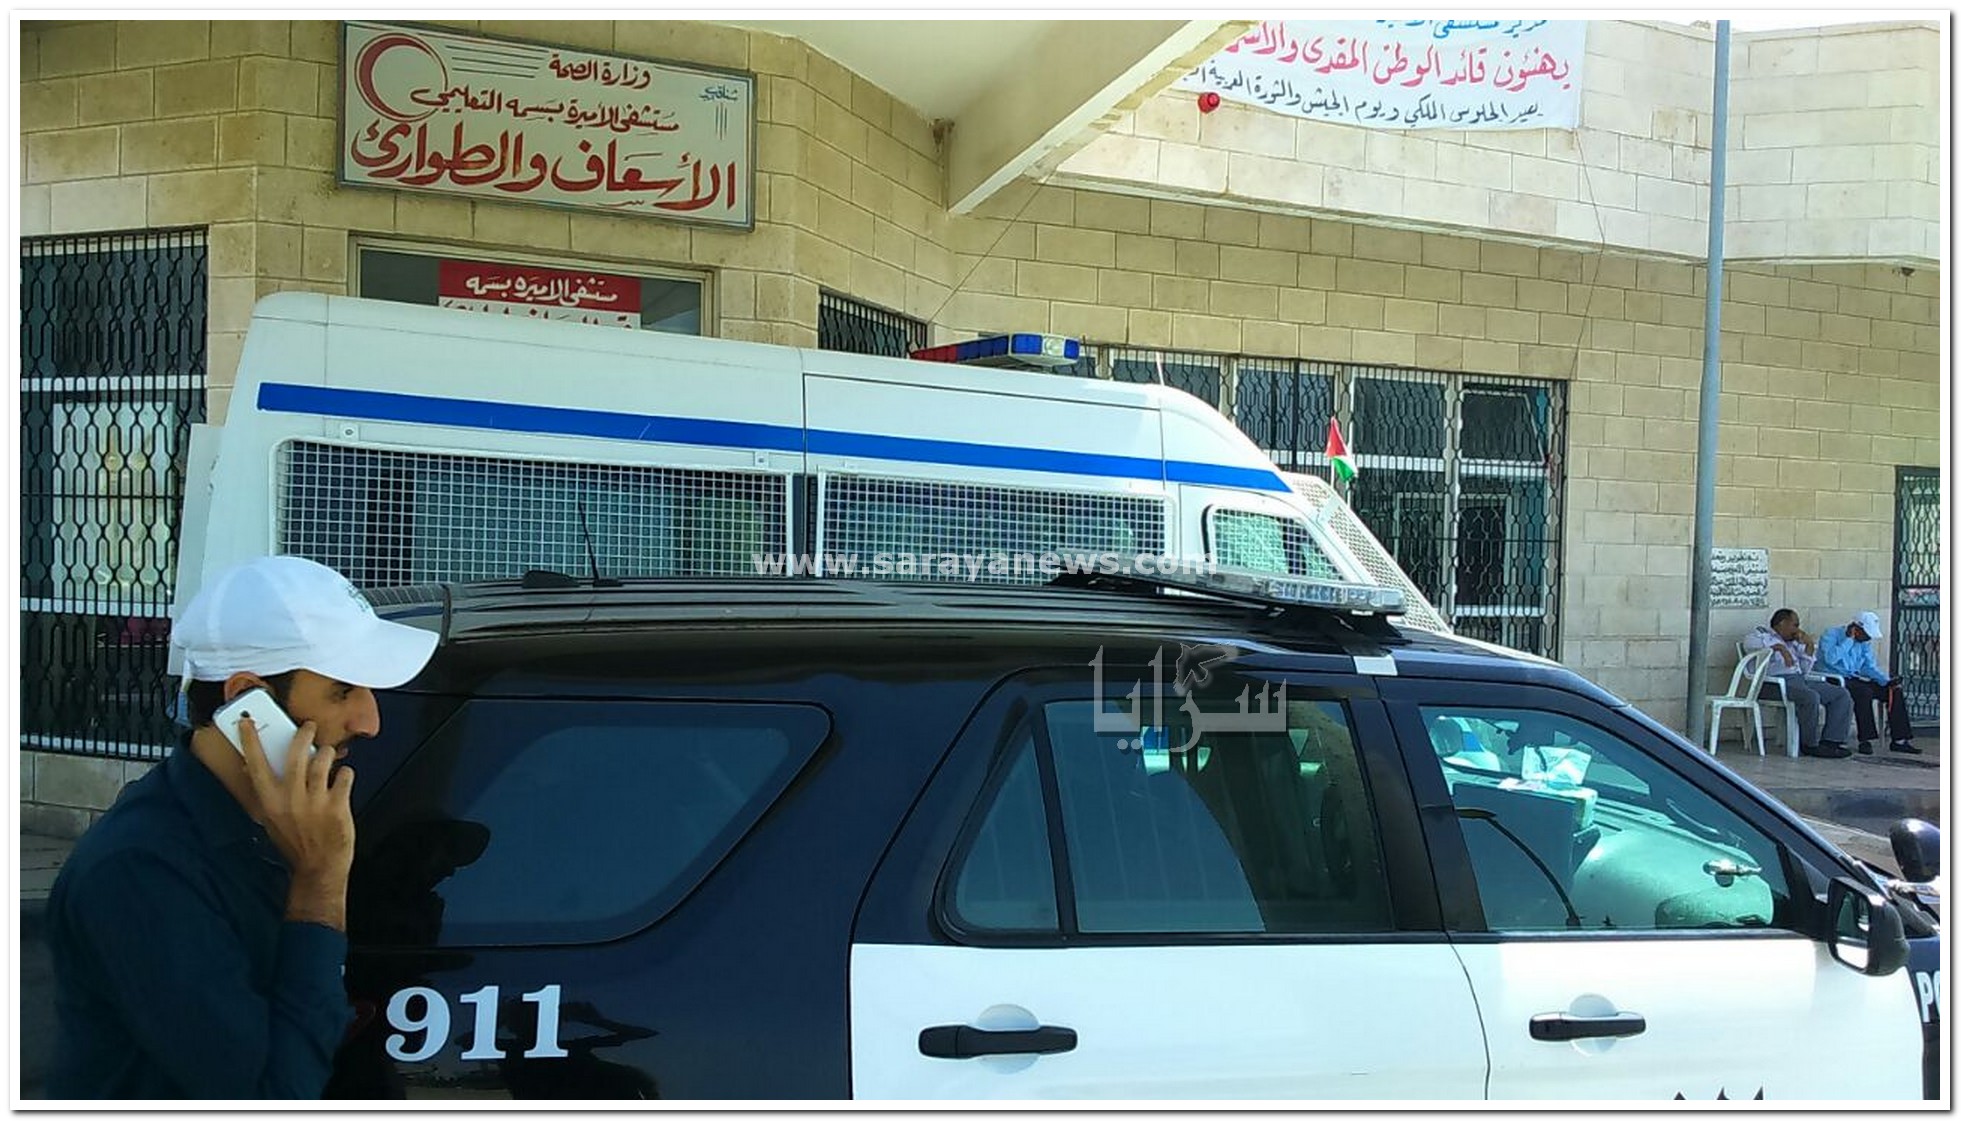 اربد: الإعتداء بالضرب على (3) أطباء في مستشفى الاميره بسمة  ..  صور 